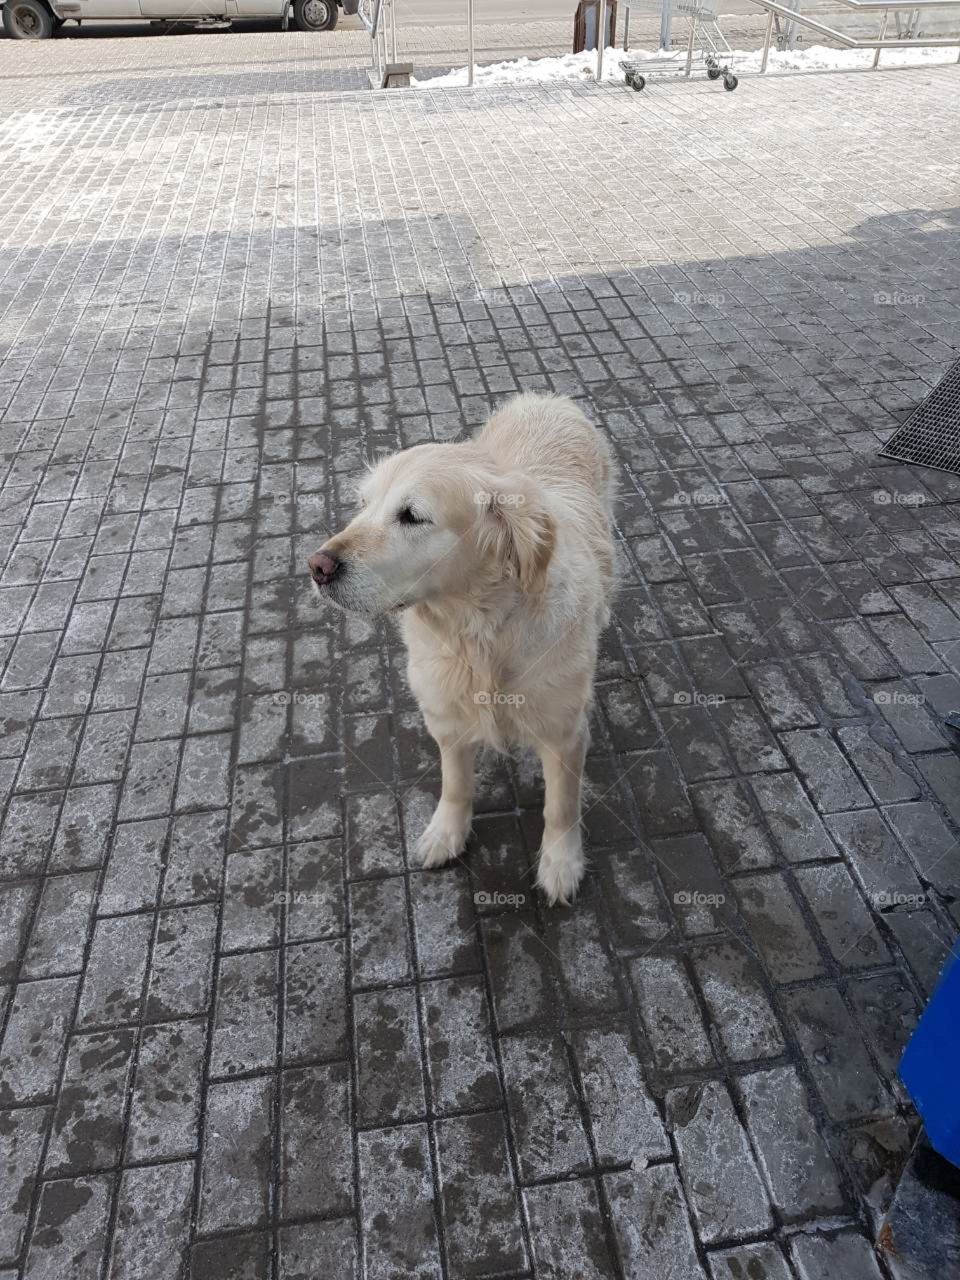 Lost labrador near the shop